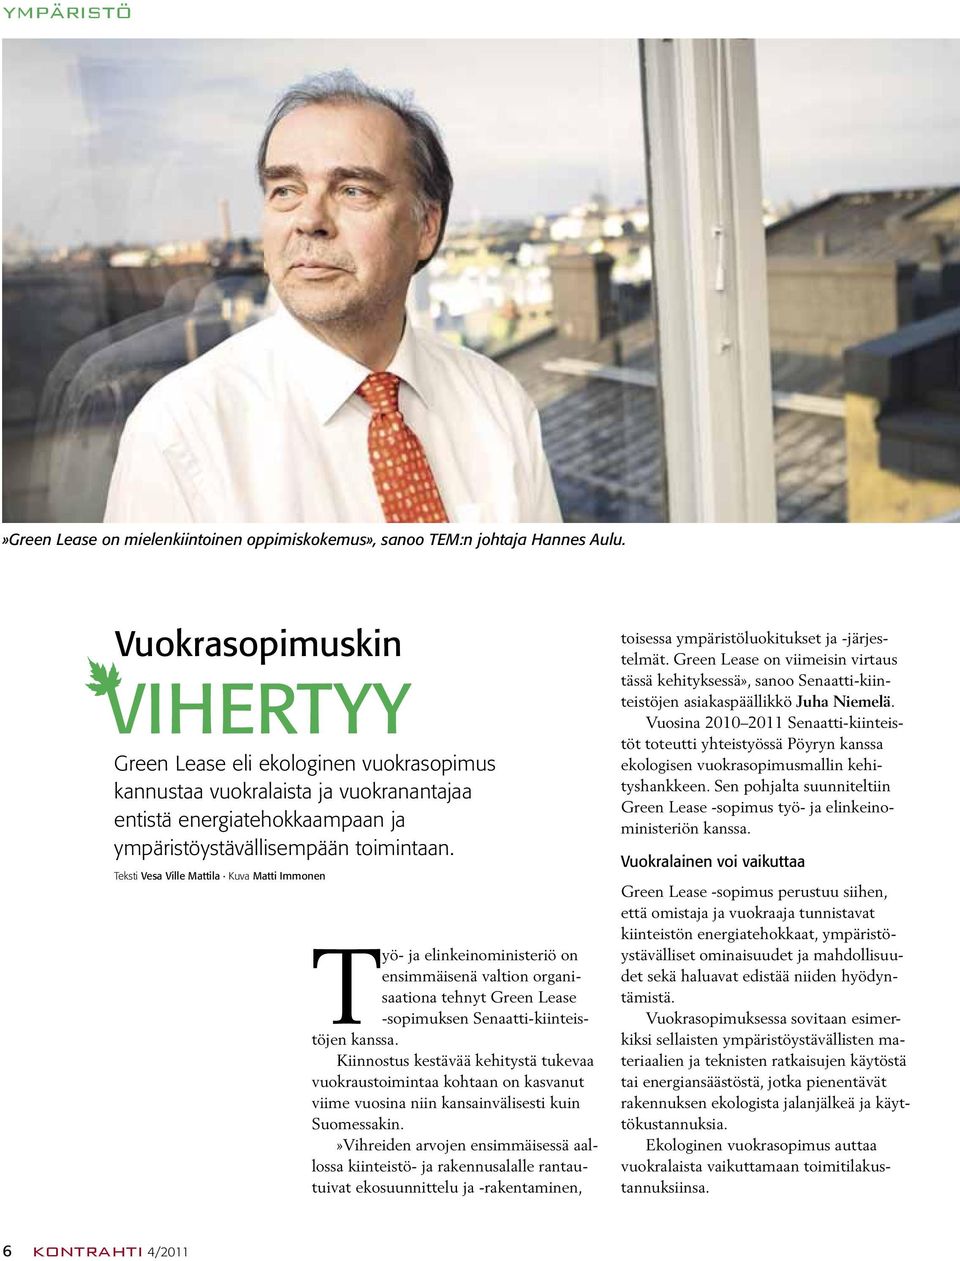 Teksti Vesa Ville Mattila Kuva Matti Immonen Työ- ja elinkeinoministeriö on ensimmäisenä valtion organisaationa tehnyt Green Lease -sopimuksen Senaatti-kiinteistöjen kanssa.